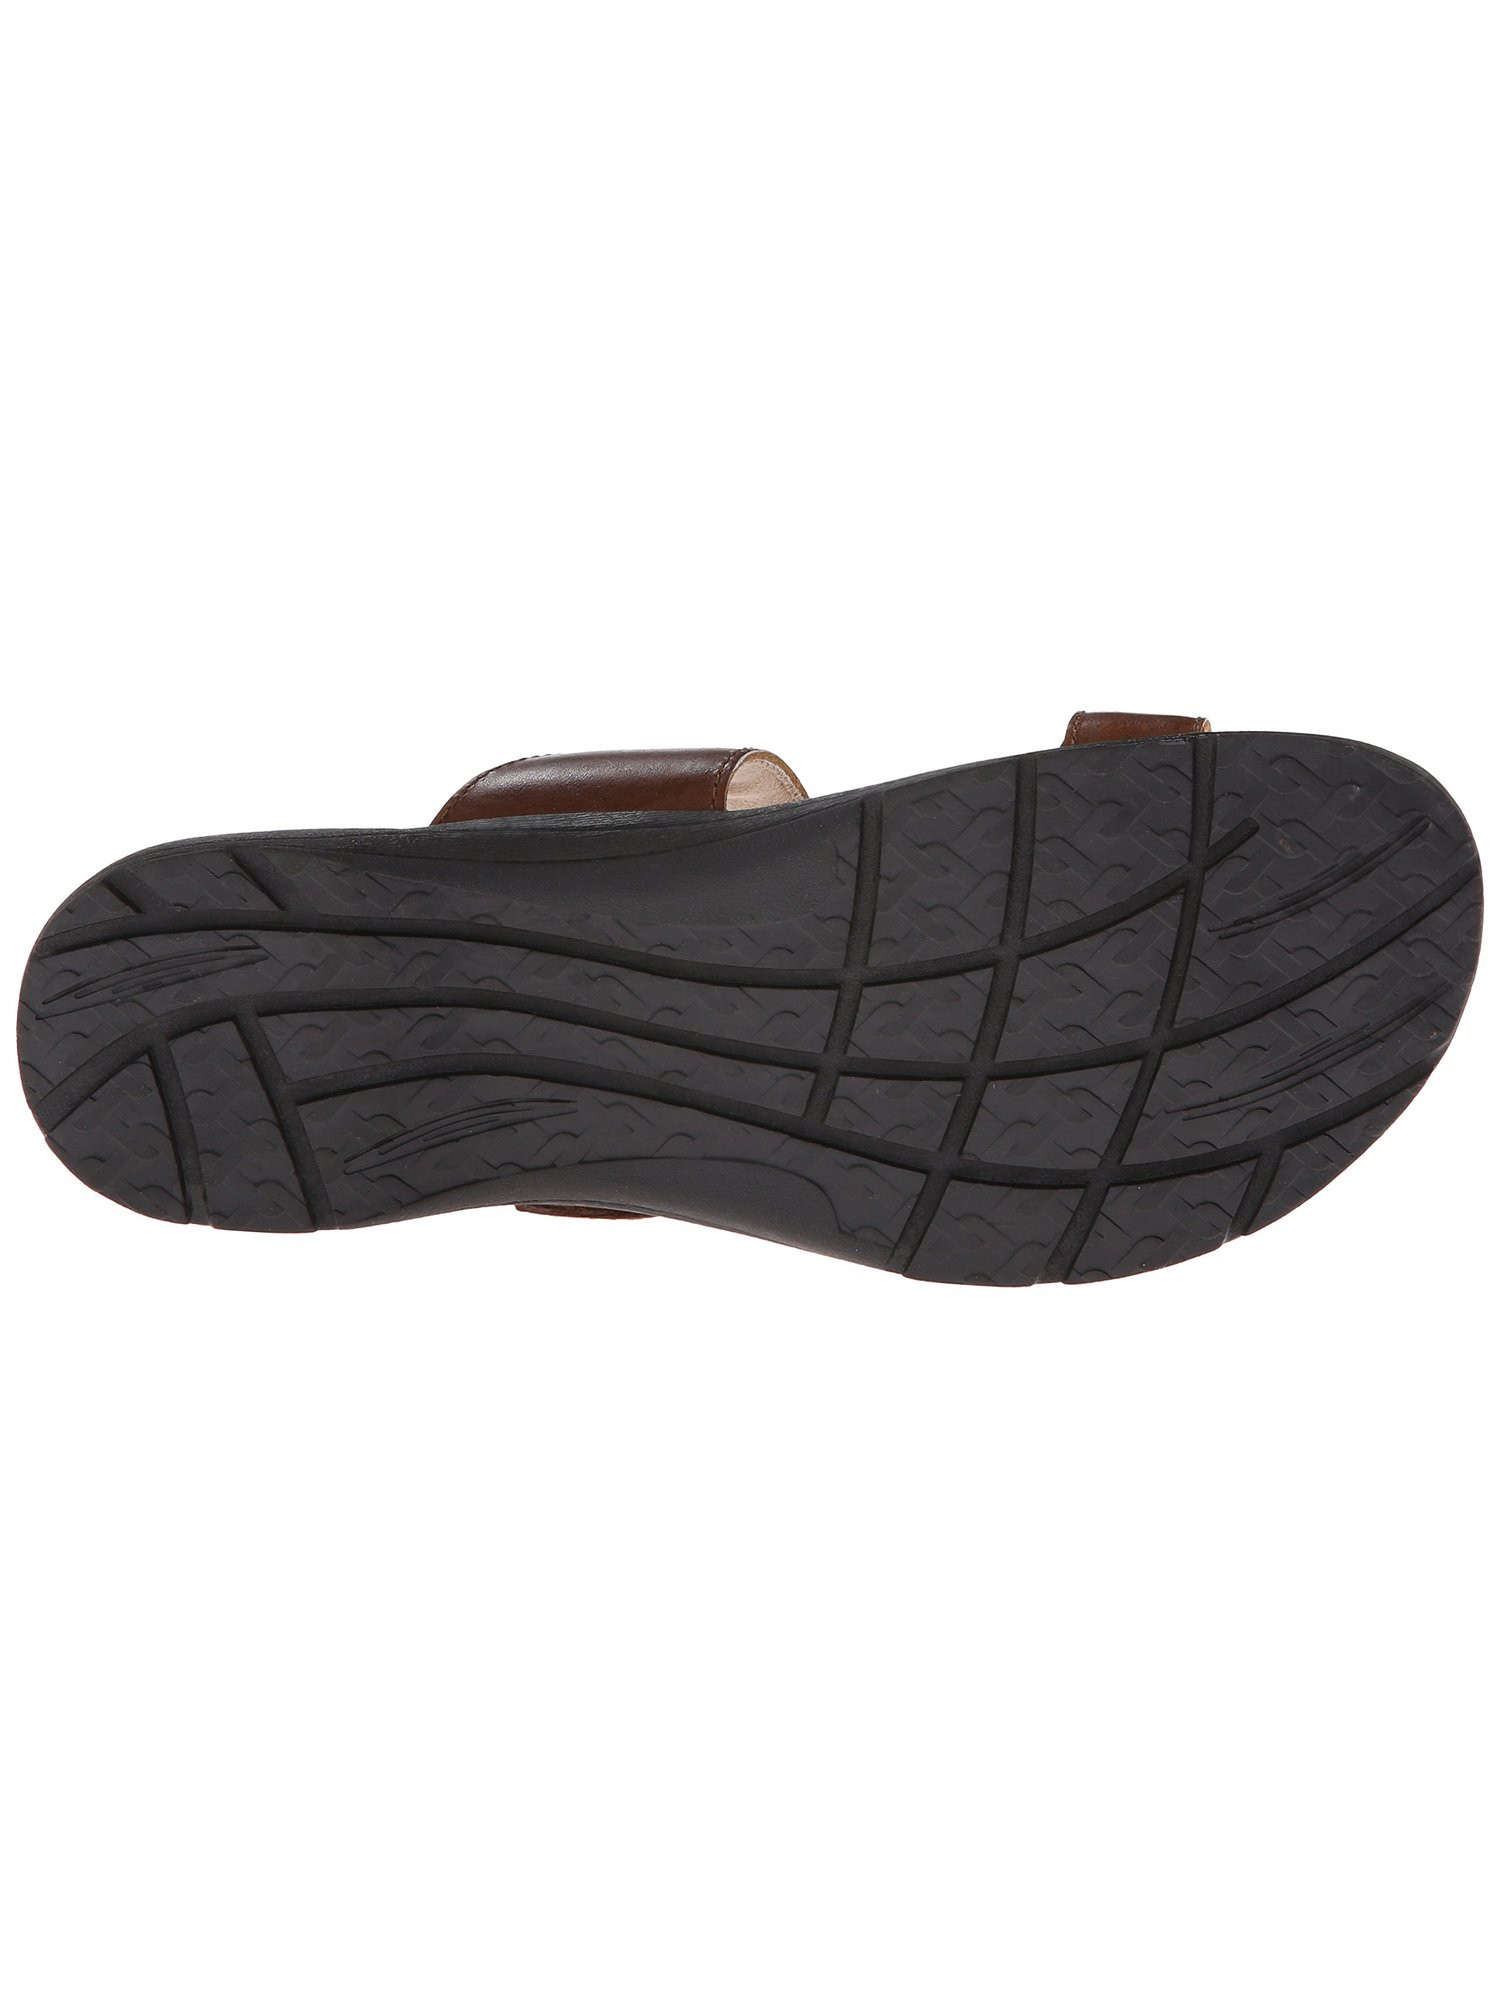 EASTLAND Womens Brown Buckle Slip Resistant Adjustable Tahiti Ii Slip On Thong Sandals 7 W